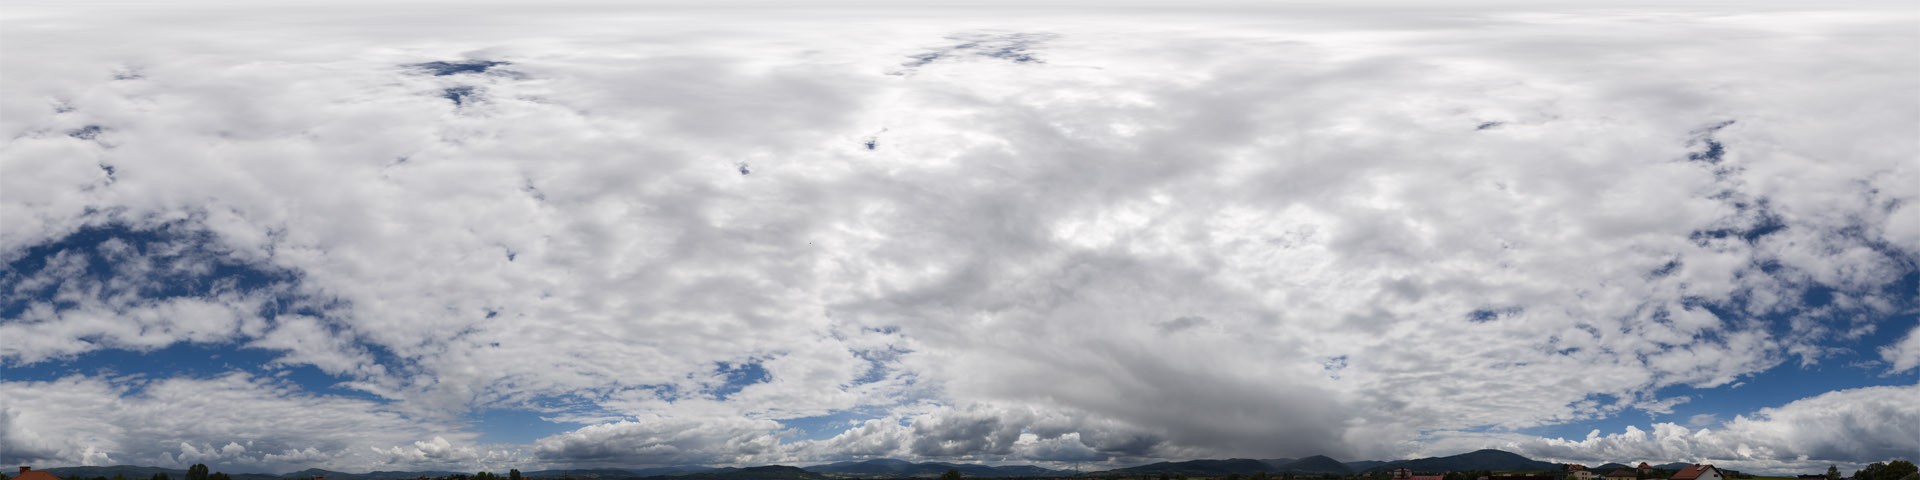 Cloudy Mountains 7453 (44k) HDRI